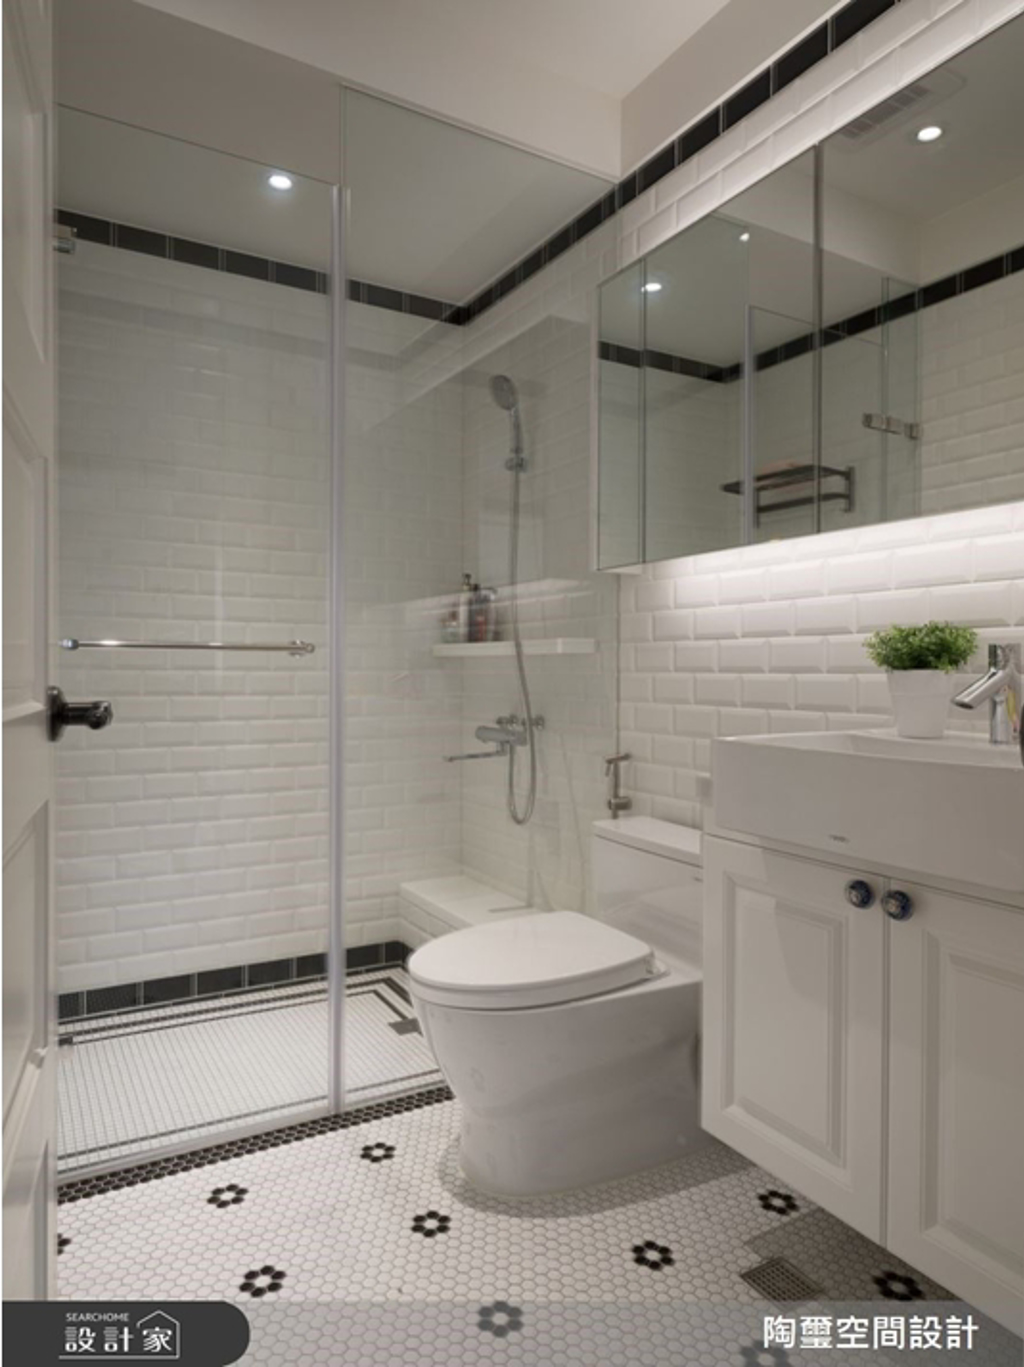 翻新後的浴廁空間，去除浴缸，採用乾濕分離，地面採黑白花磚，鏡箱增加收納空間亦拉寬空間感，使整體視覺更顯乾淨清爽。 (圖/設計家)